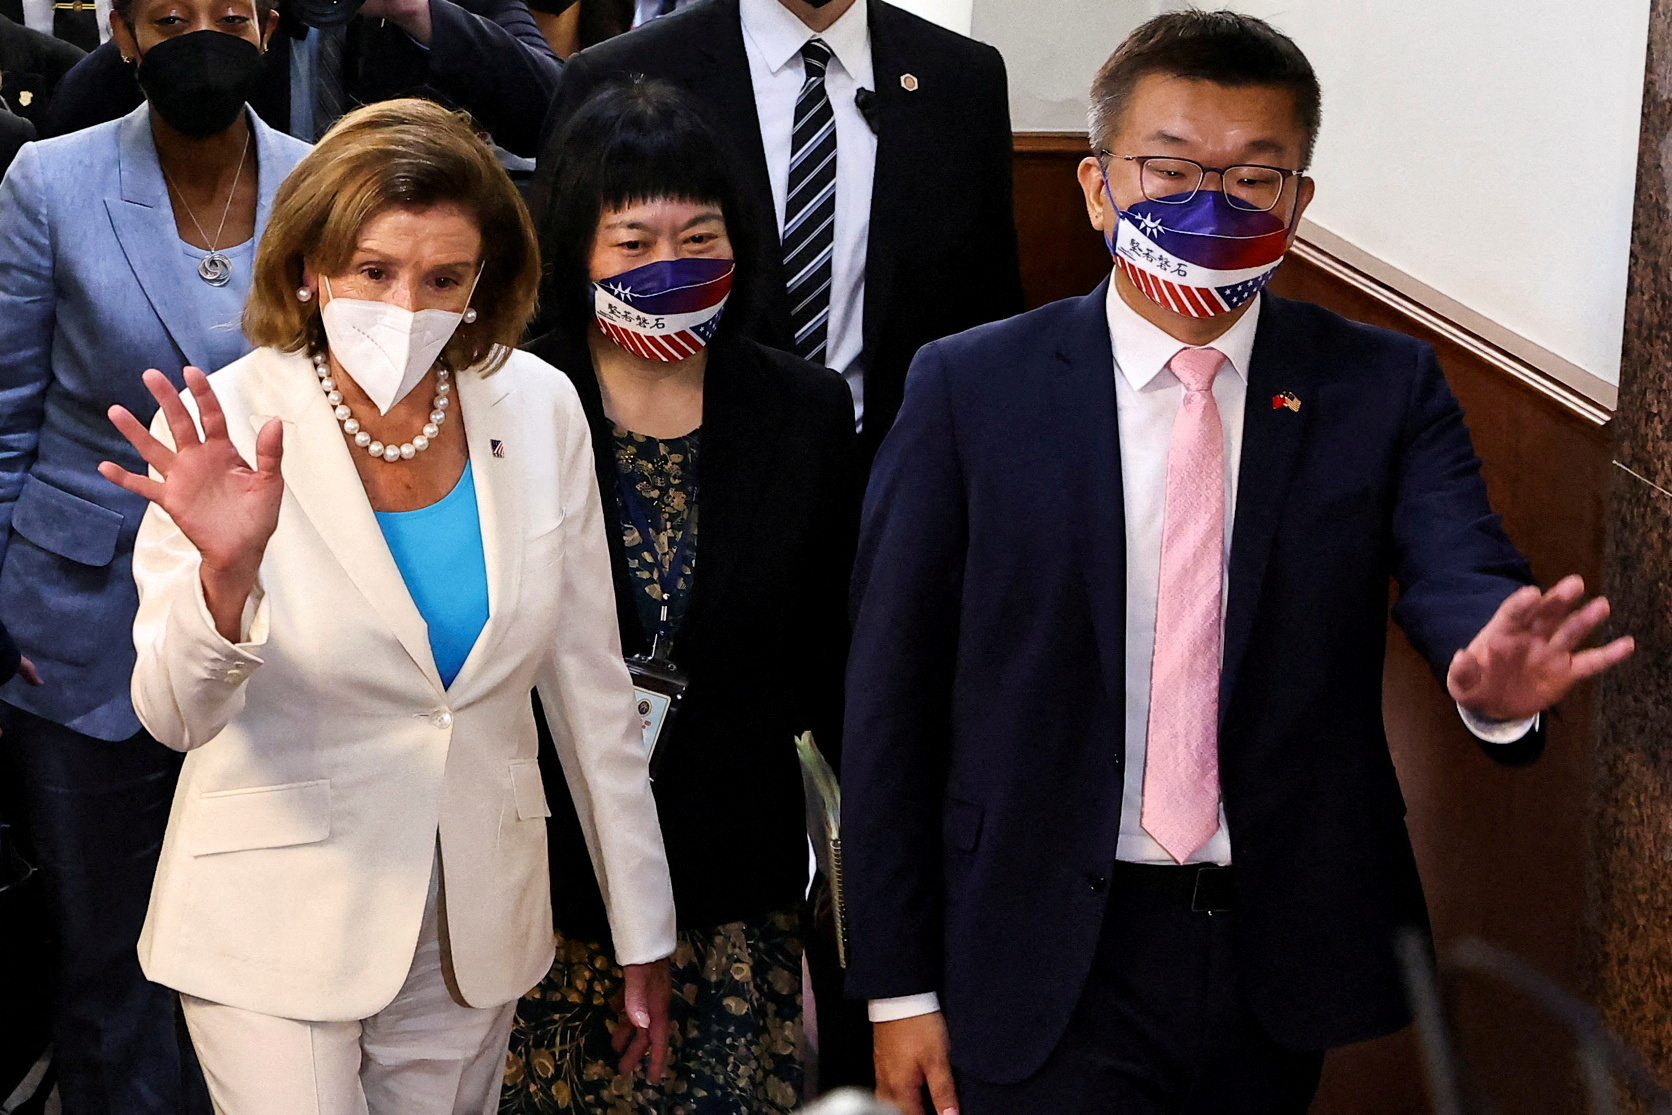 Foto de archivo: La presidenta de la Cámara de Representantes de Estados Unidos, Nancy Pelosi, camina junto al vicepresidente del Yuan Legislativo, Tsai Chi-chang, al salir del parlamento en Taipéi, Taiwán, el 3 de agosto de 2022 (REUTERS/Ann Wang)